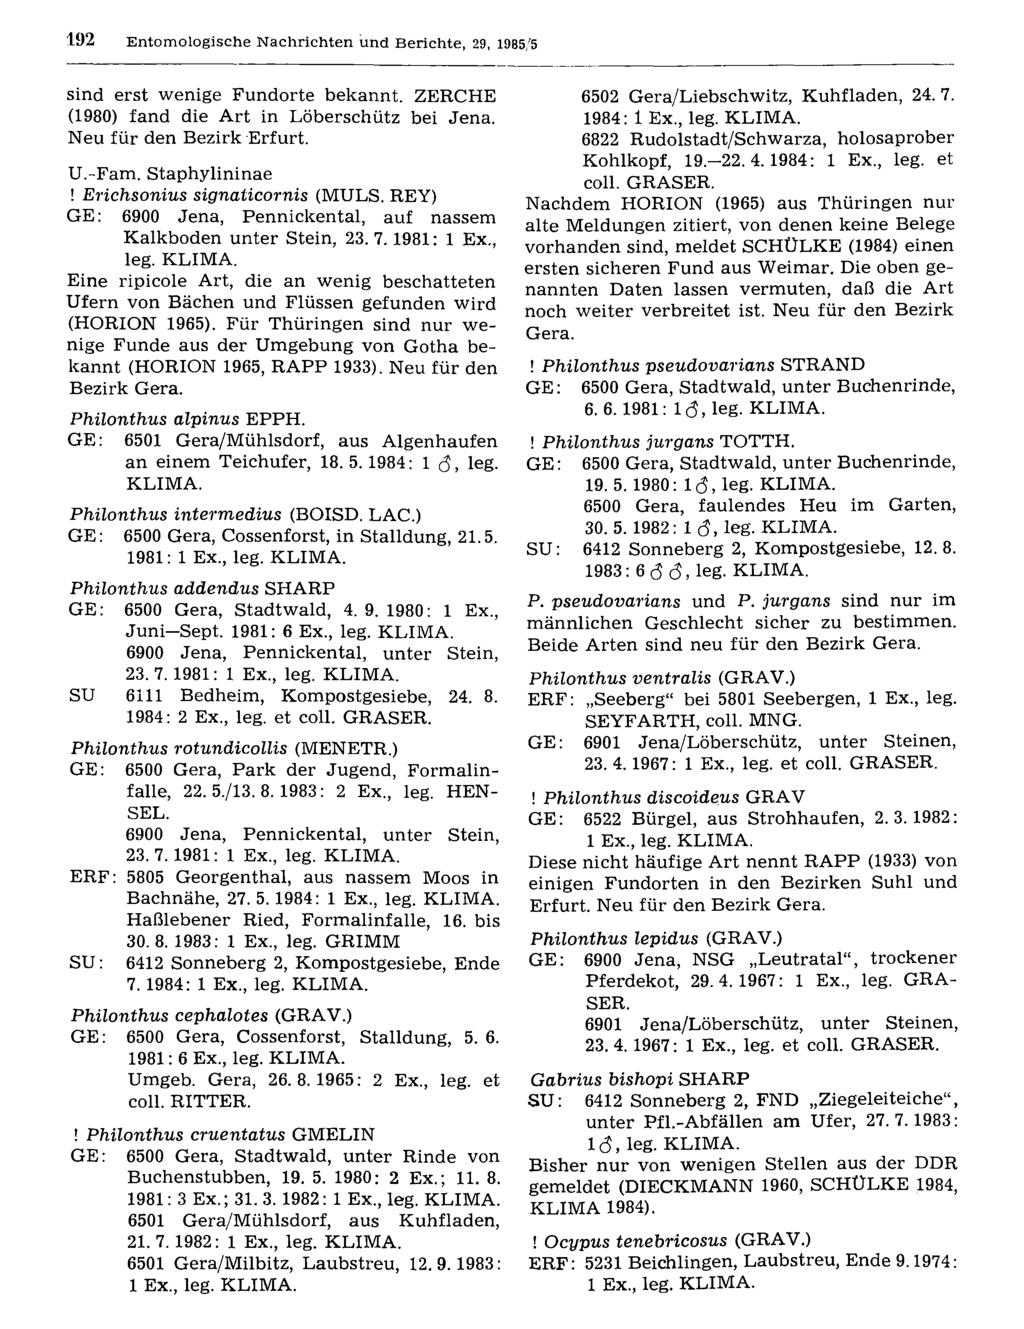 192 Entomologische Nachrichten Entomologische und Nachrichten Berichte, und 29, Berichte; 1985/5 download unter www.biologiezentrum.at sind erst wenige Fundorte bekannt.